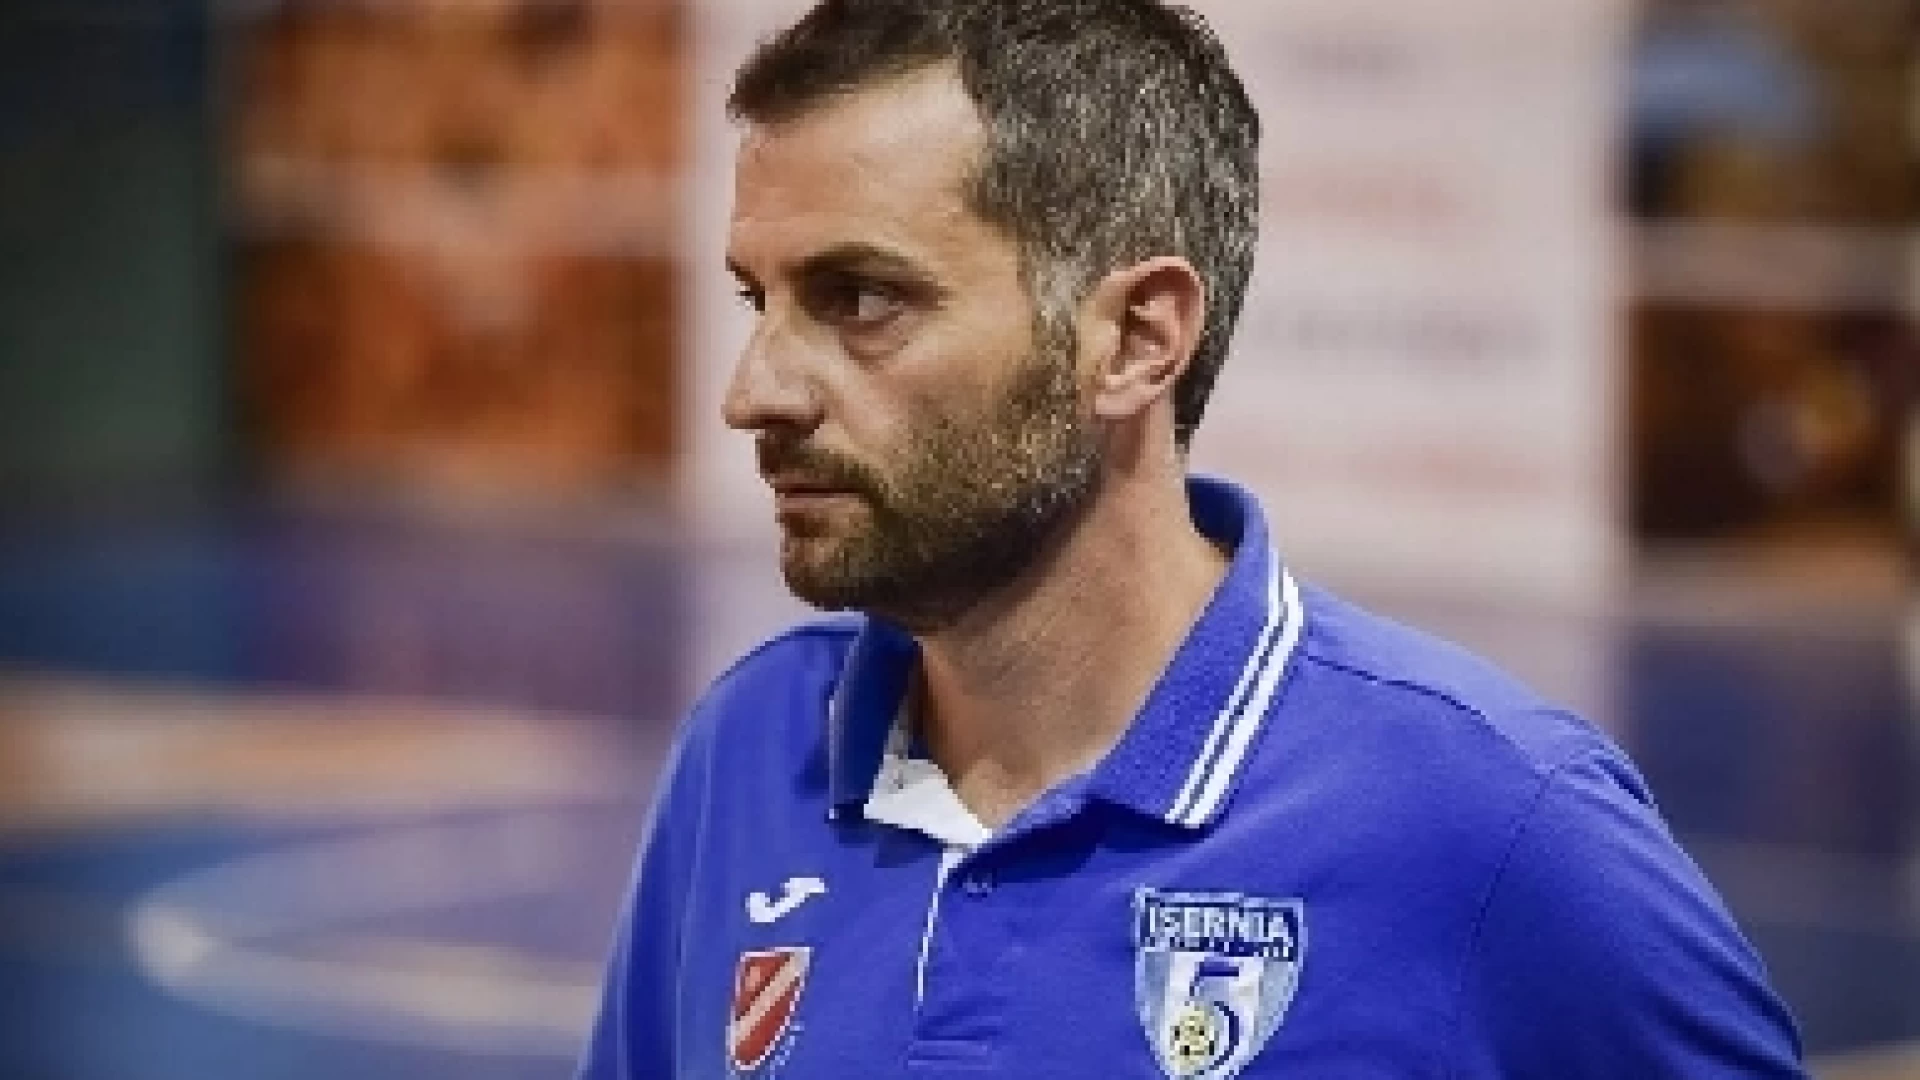 Calcio a 5: l’isernino Fausto Scarpitti è il nuovo tecnico dell’Acqua e Sapone, sempre in serie A.